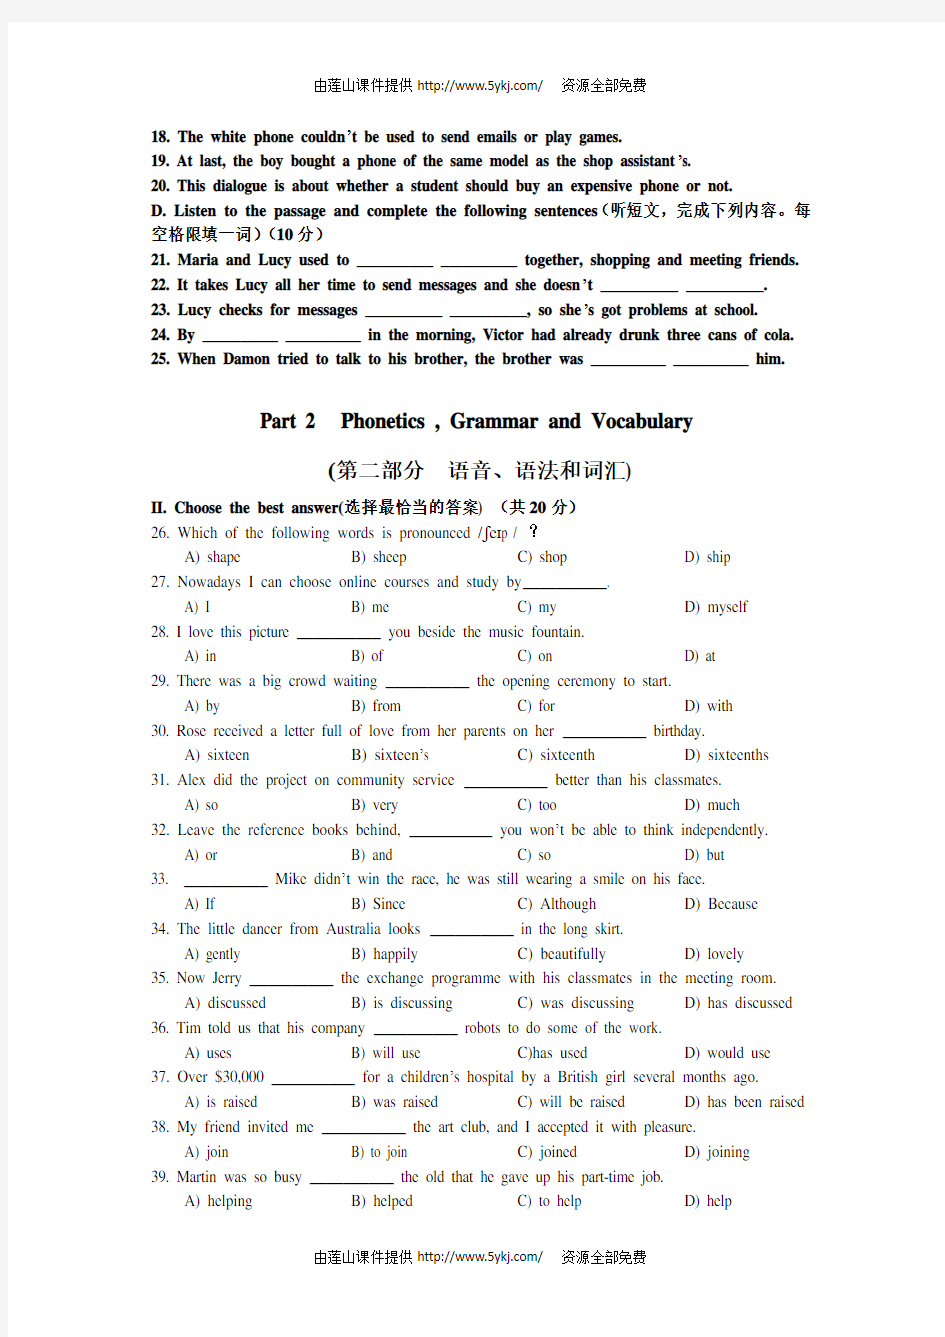 2015年上海市中考英语试卷及答案